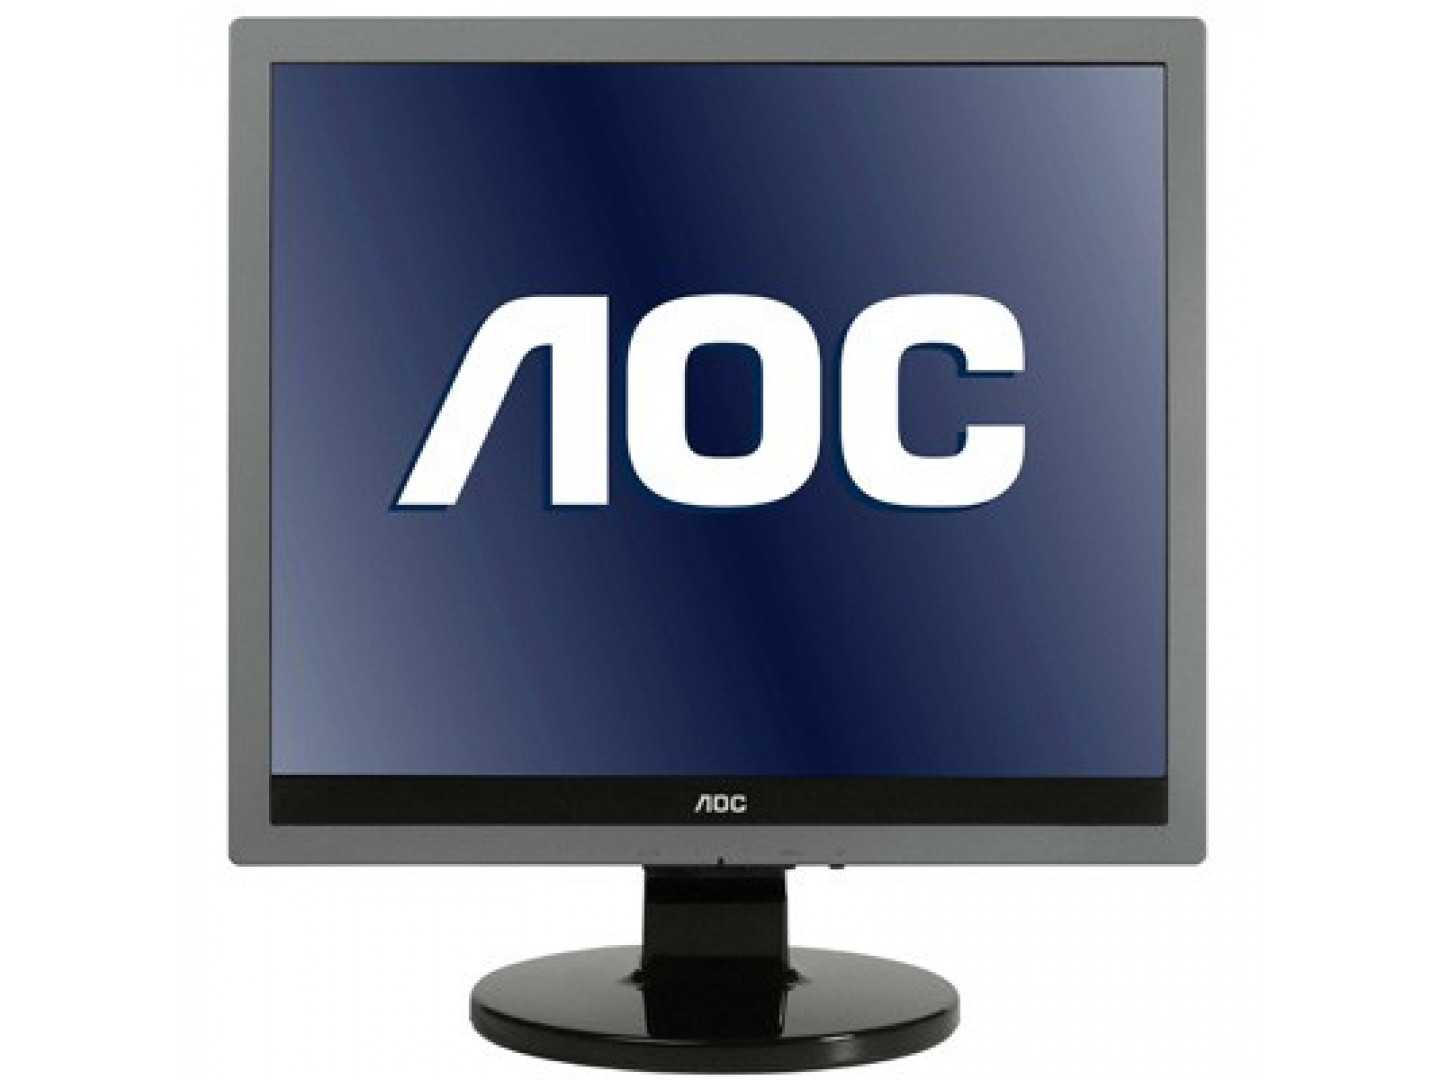 Монитор AOC 719Va - подробные характеристики обзоры видео фото Цены в интернет-магазинах где можно купить монитор AOC 719Va